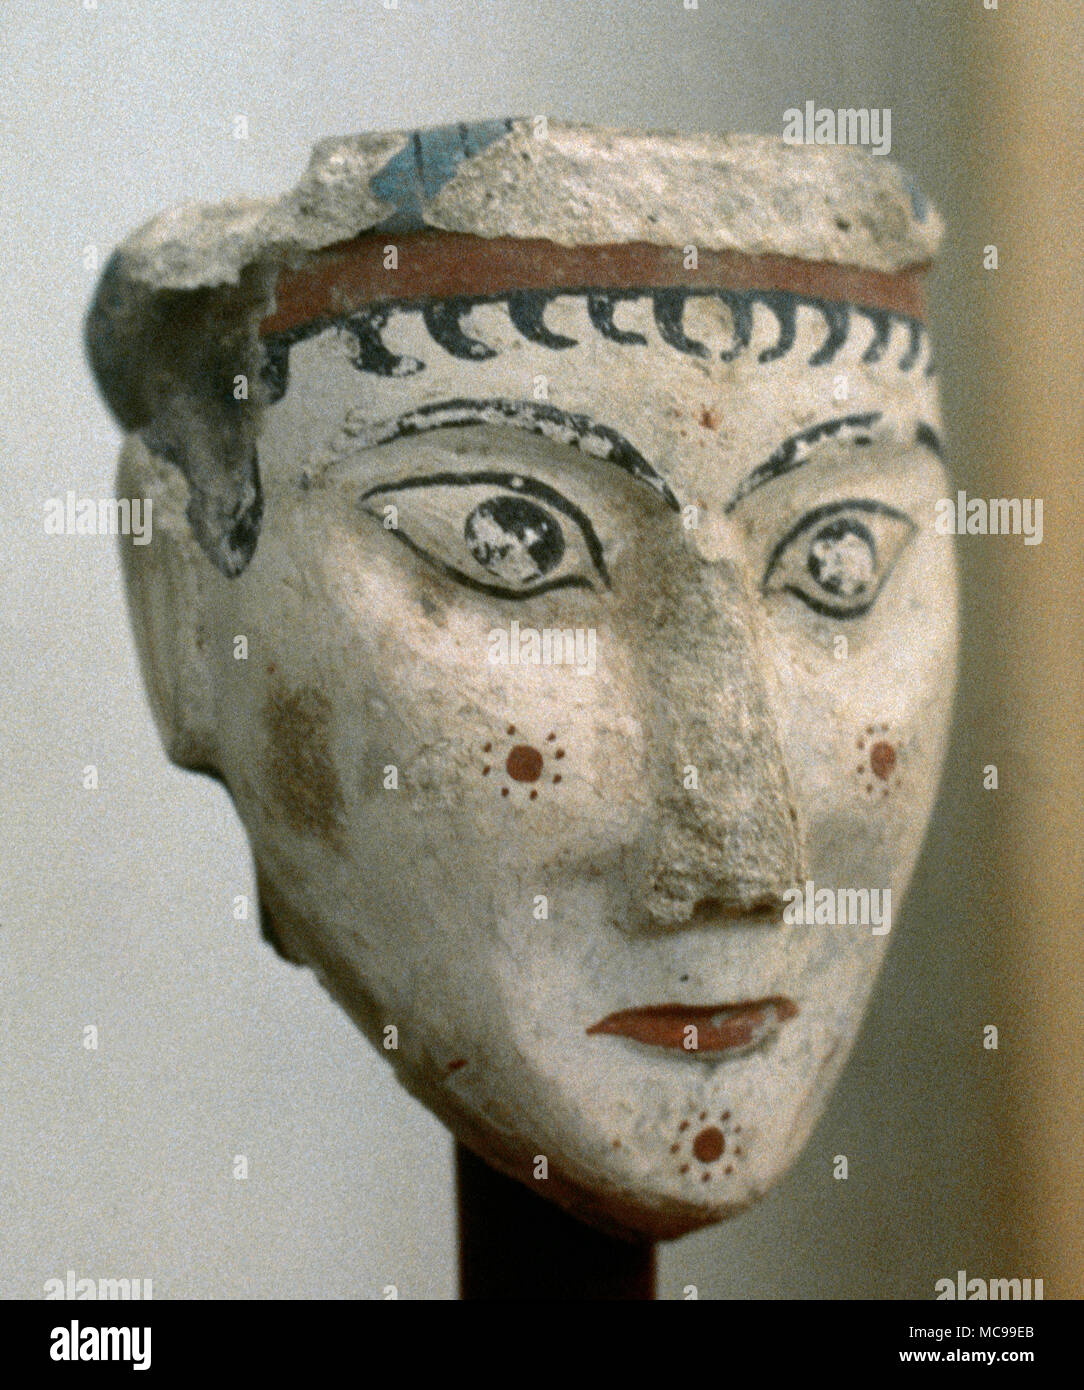 Gips Kopf einer Frau (eventuell eine Göttin oder Sphinx). Akropolis in Mykene, 13. Jahrhundert v. Chr.. Griechenland. Nationalen Archäologischen Museum. Athen, Griechenland. Stockfoto